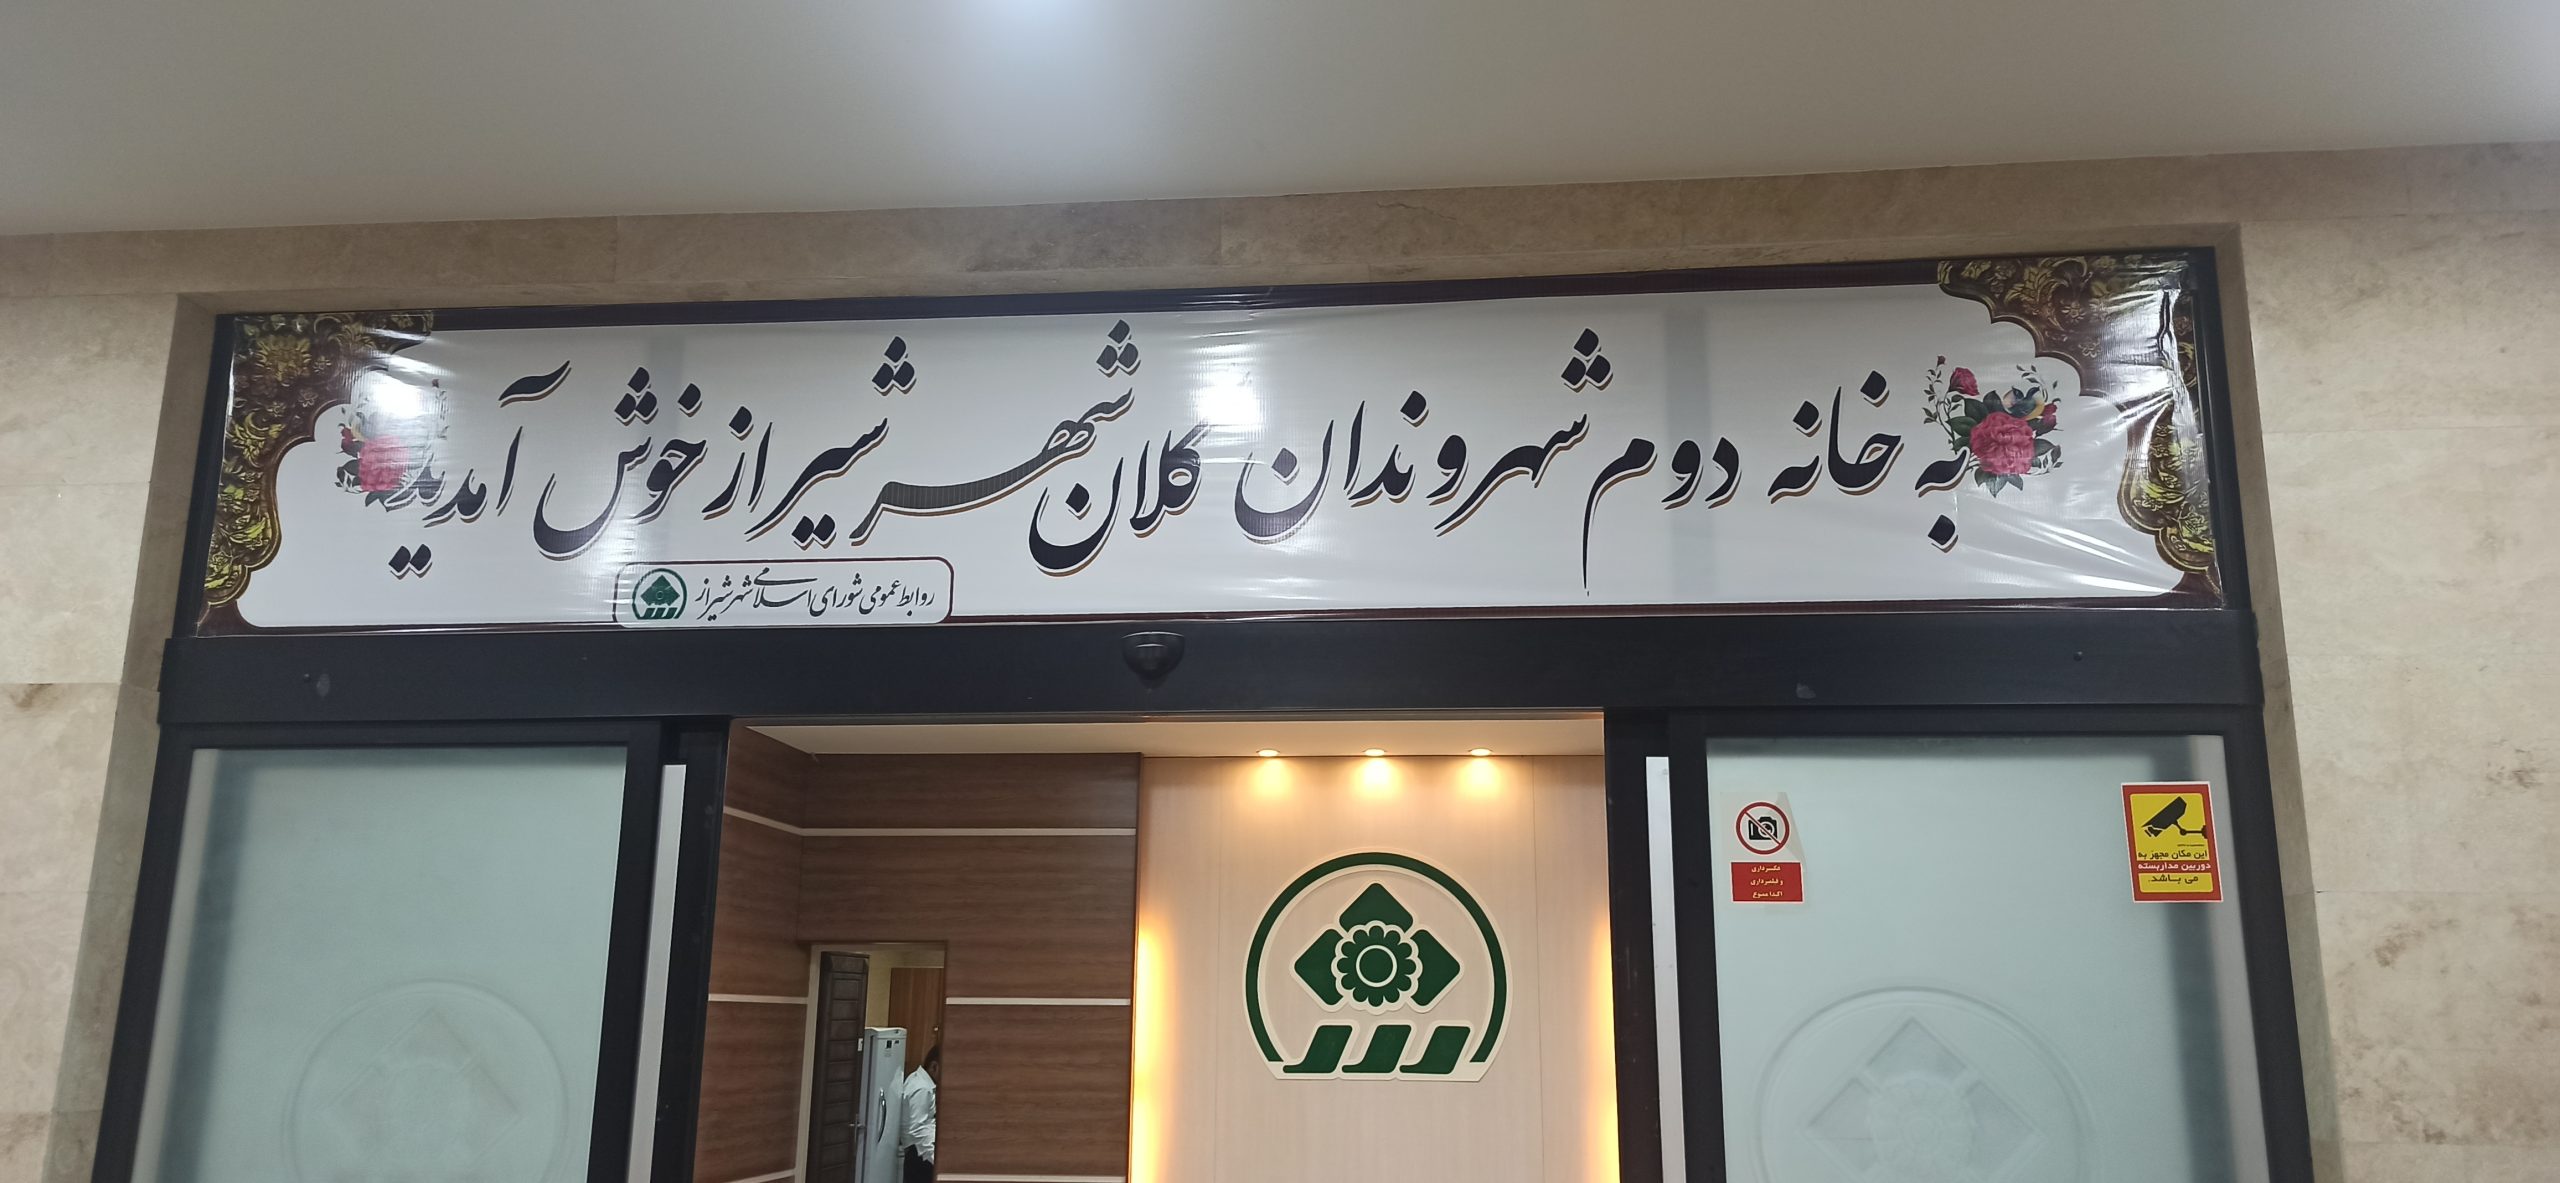 متولیان موقوفات در شیراز پاسخگو نیستند